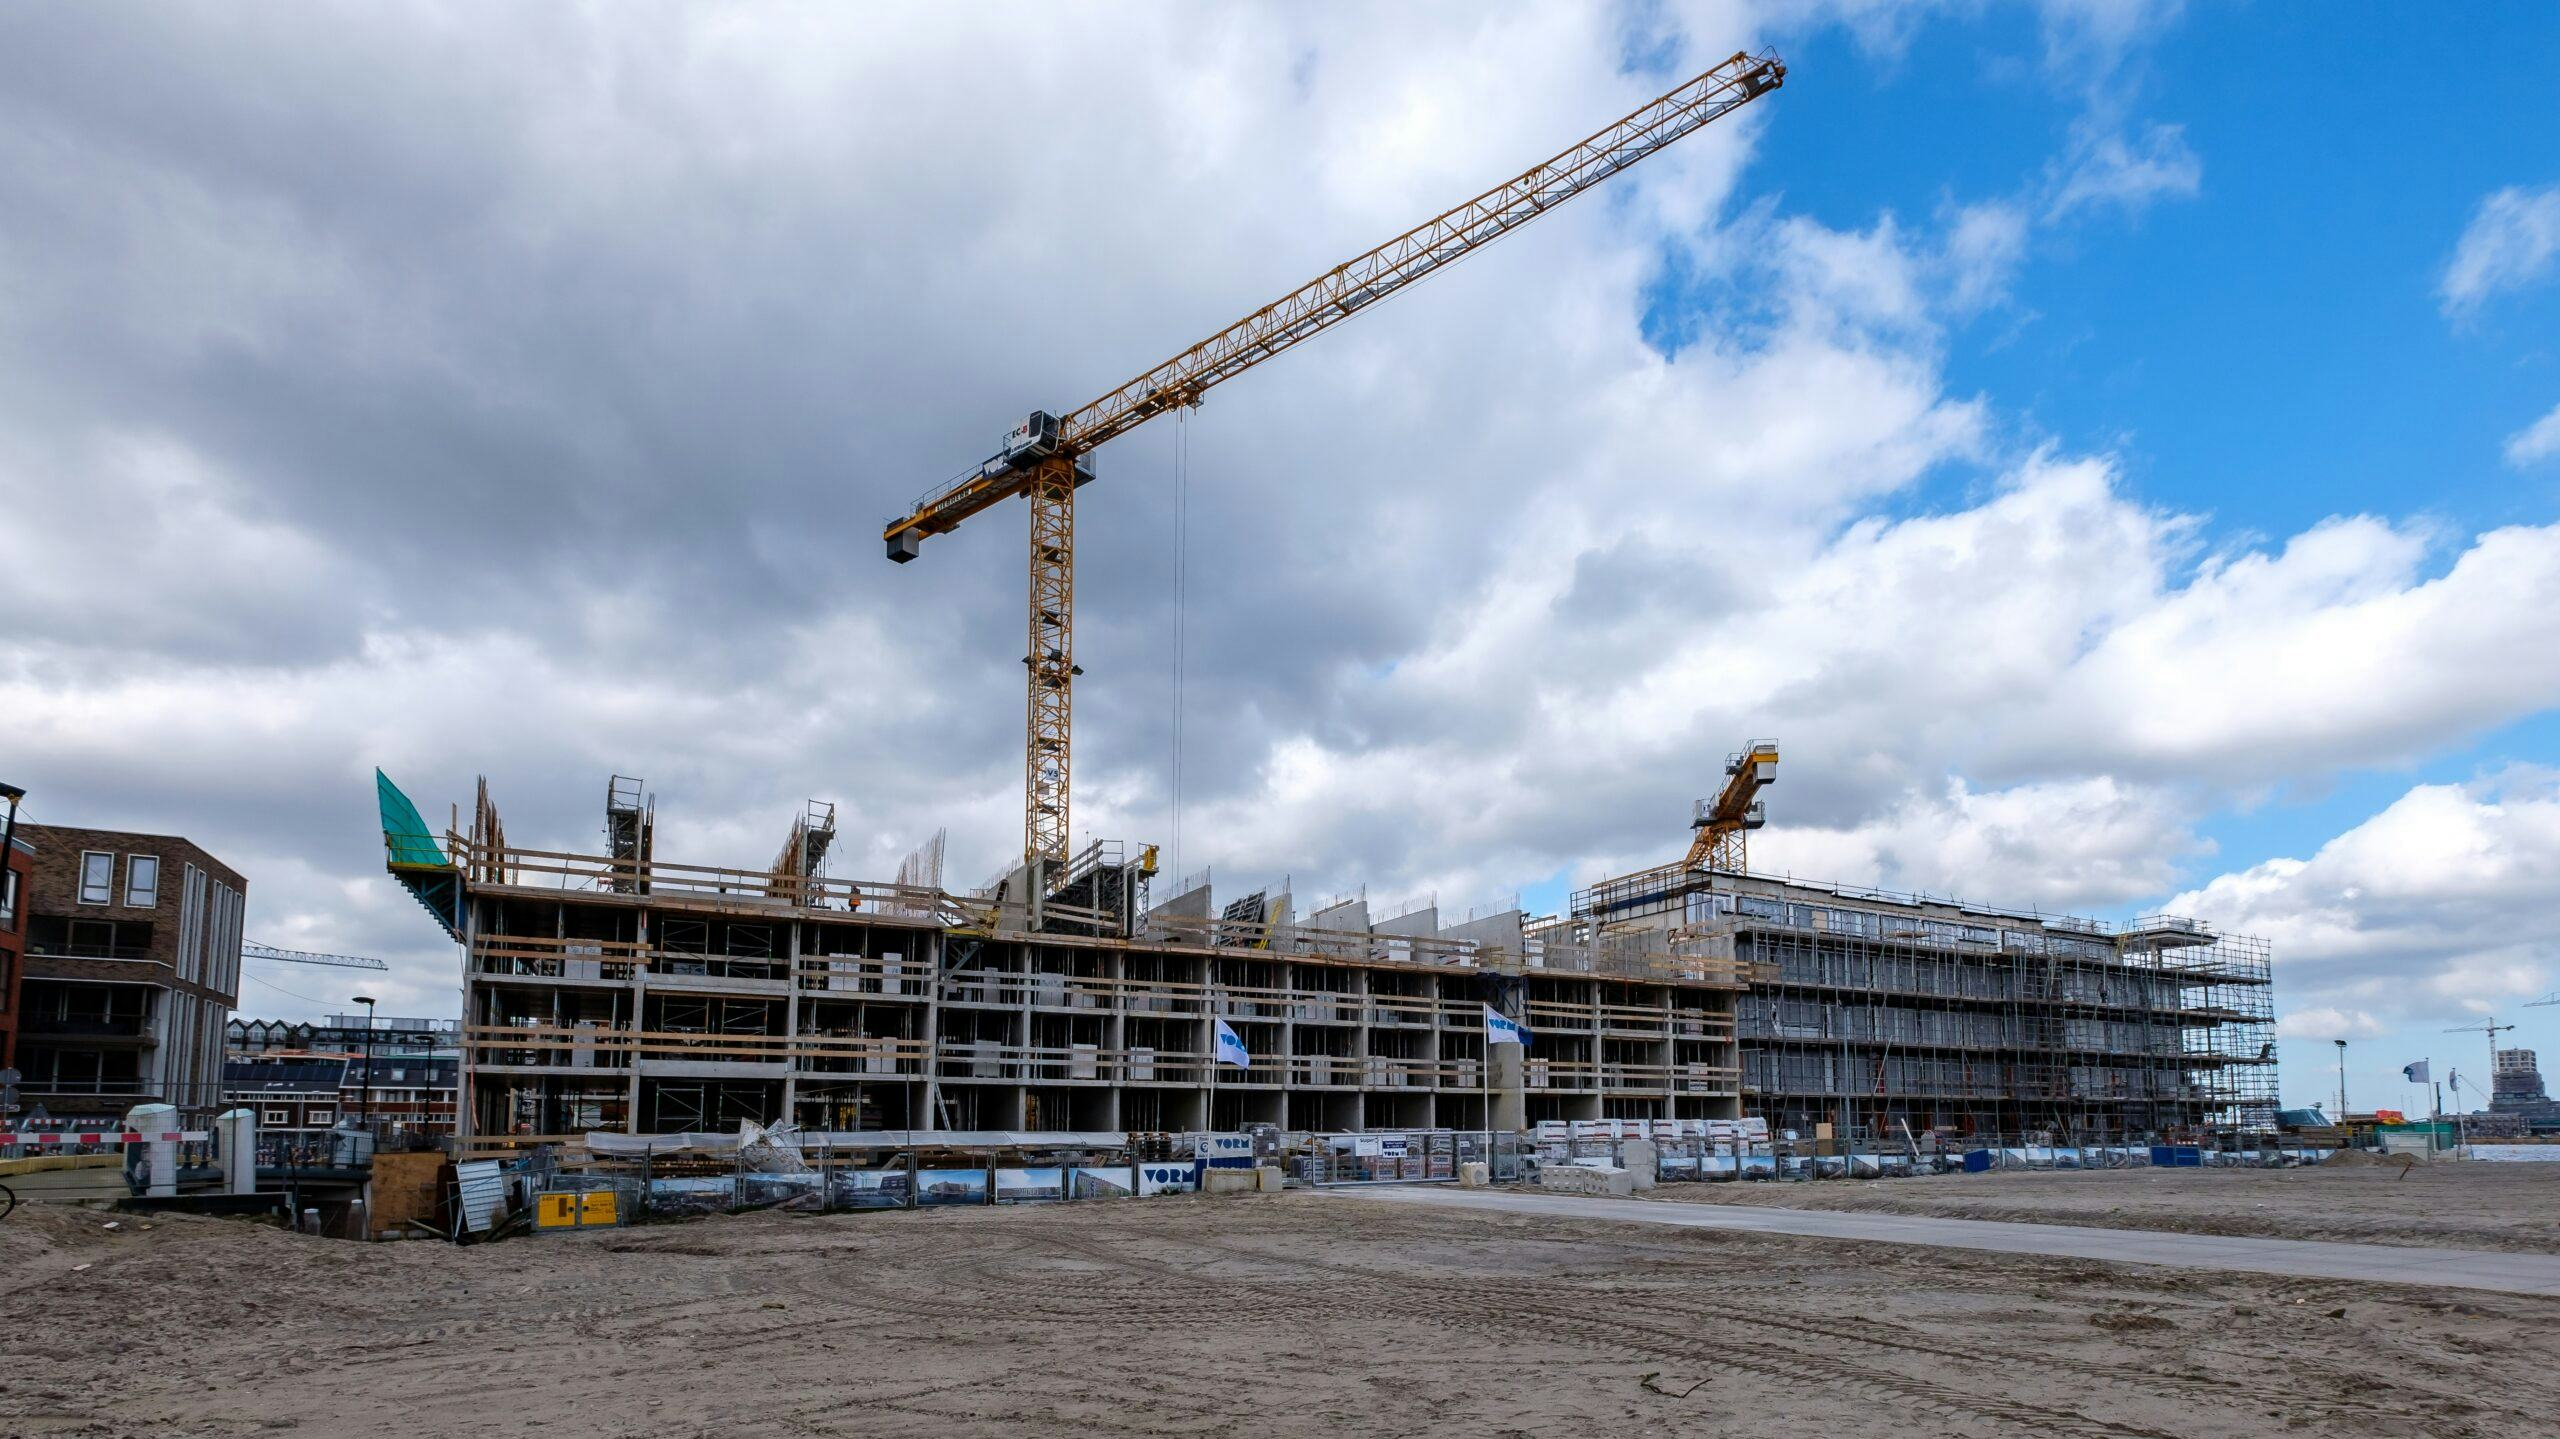 Woningbouw gaat flink afnemen volgens het EIB